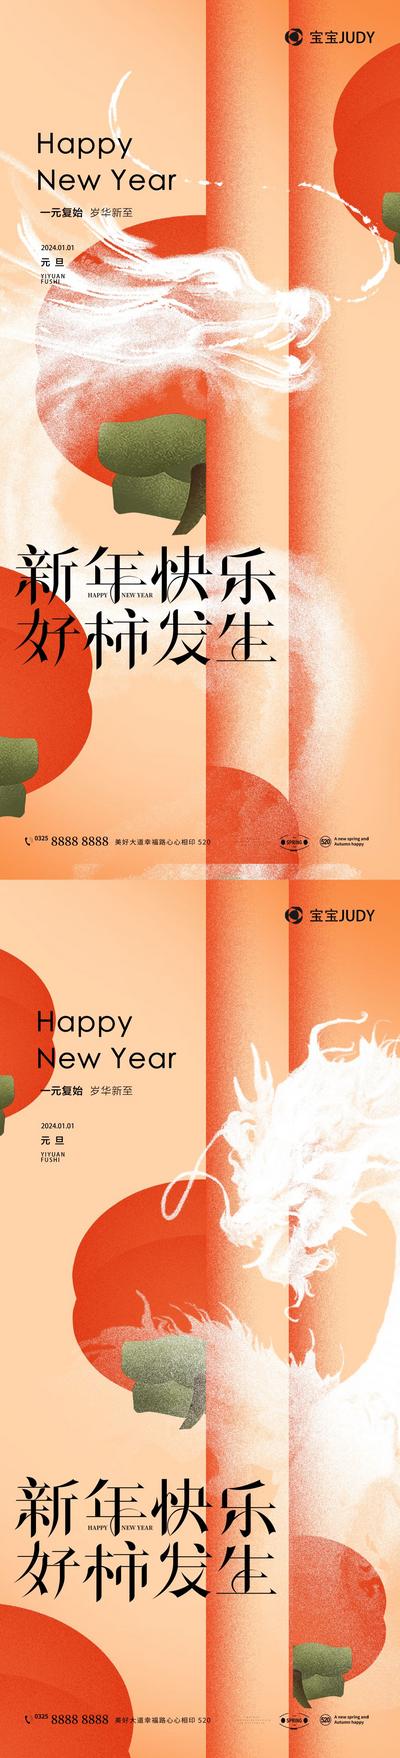 南门网 广告 海报 春节 新年 祝福 柿子 好柿发生 系列 元素